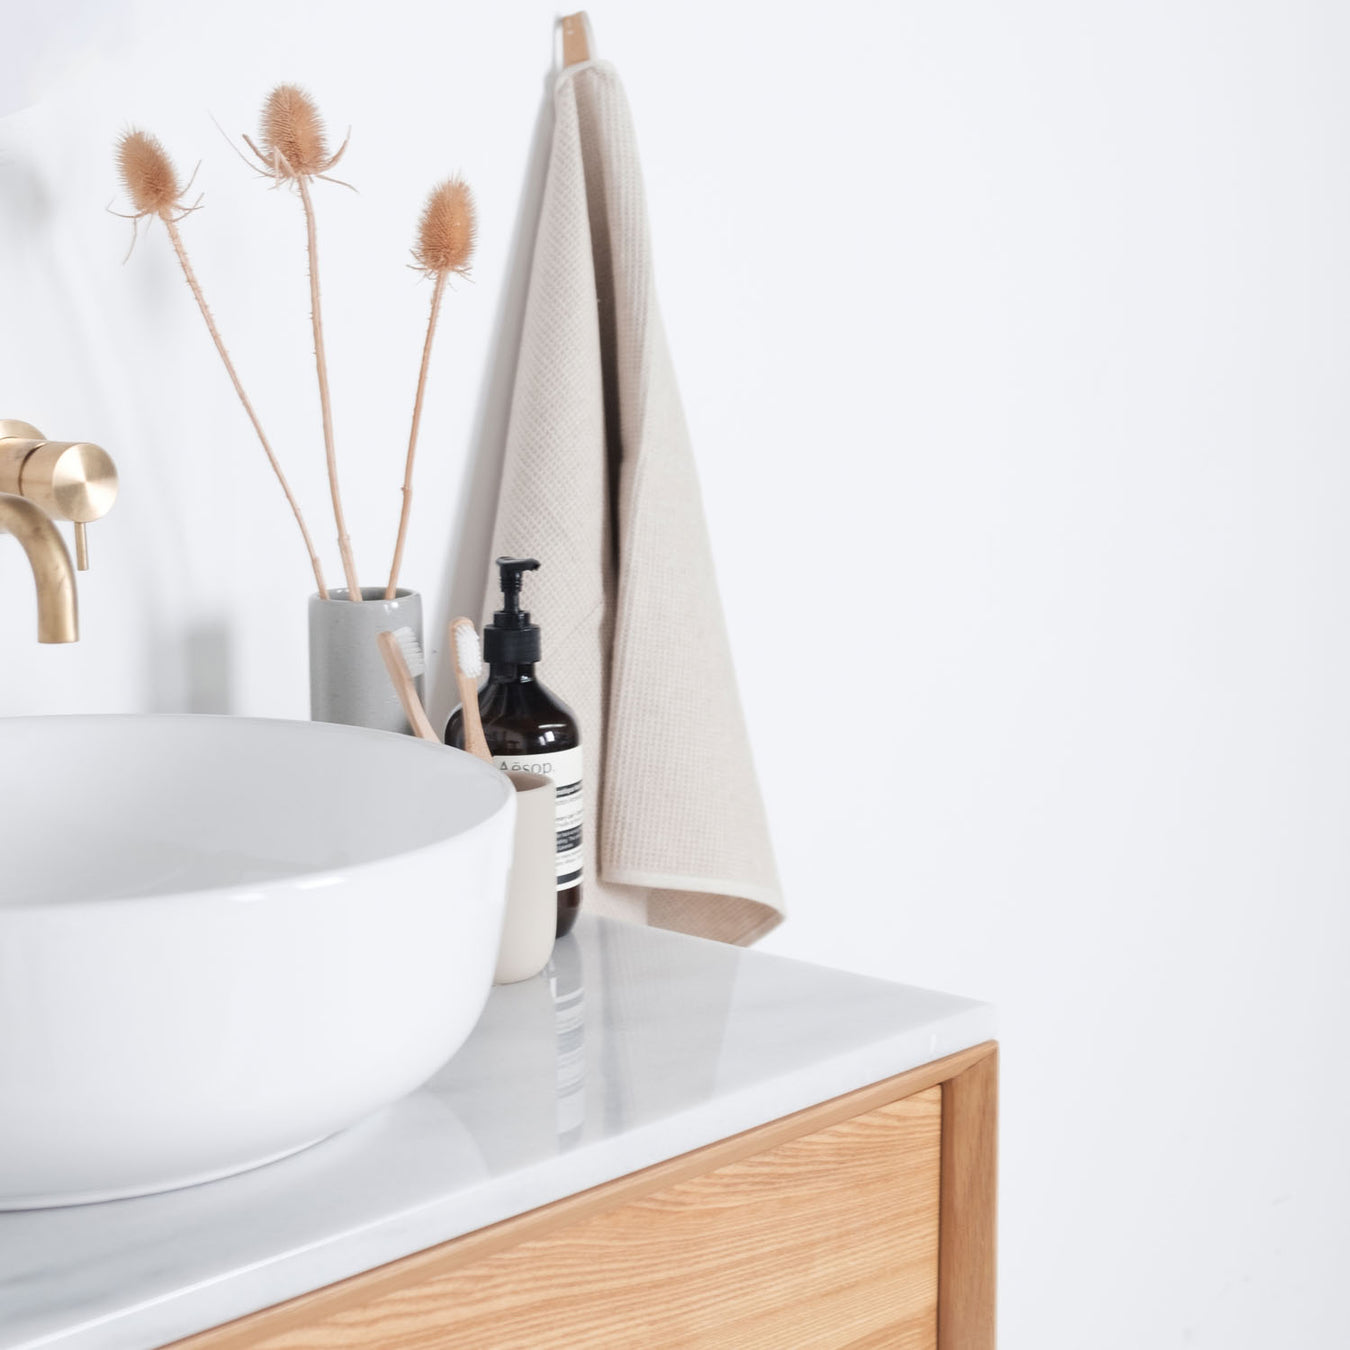 Marmeren wastafelblad met eik houten badkamerkast van Furnified.ALT